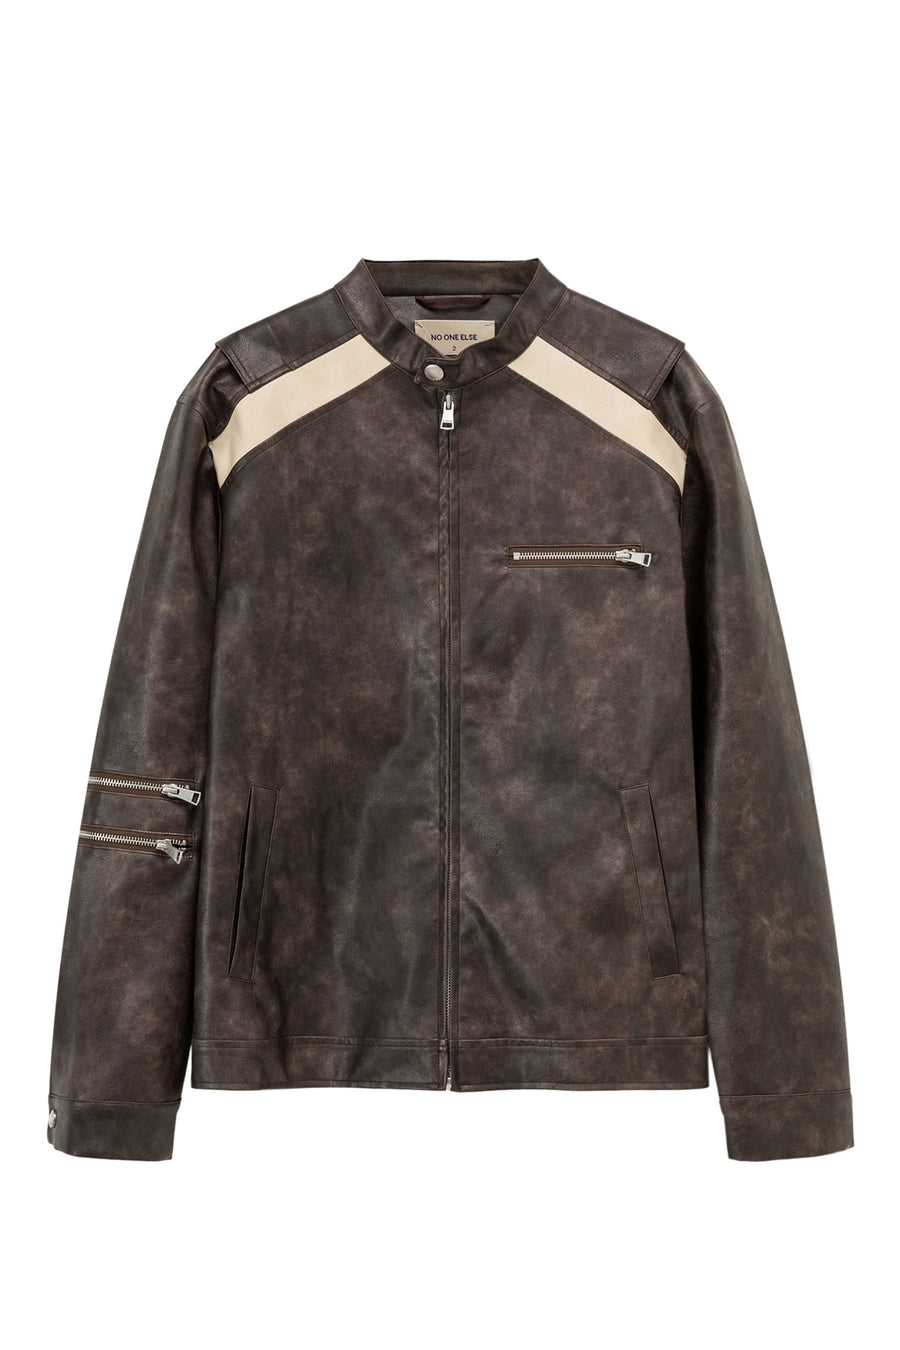 CHUU Boxy Leather Jacket